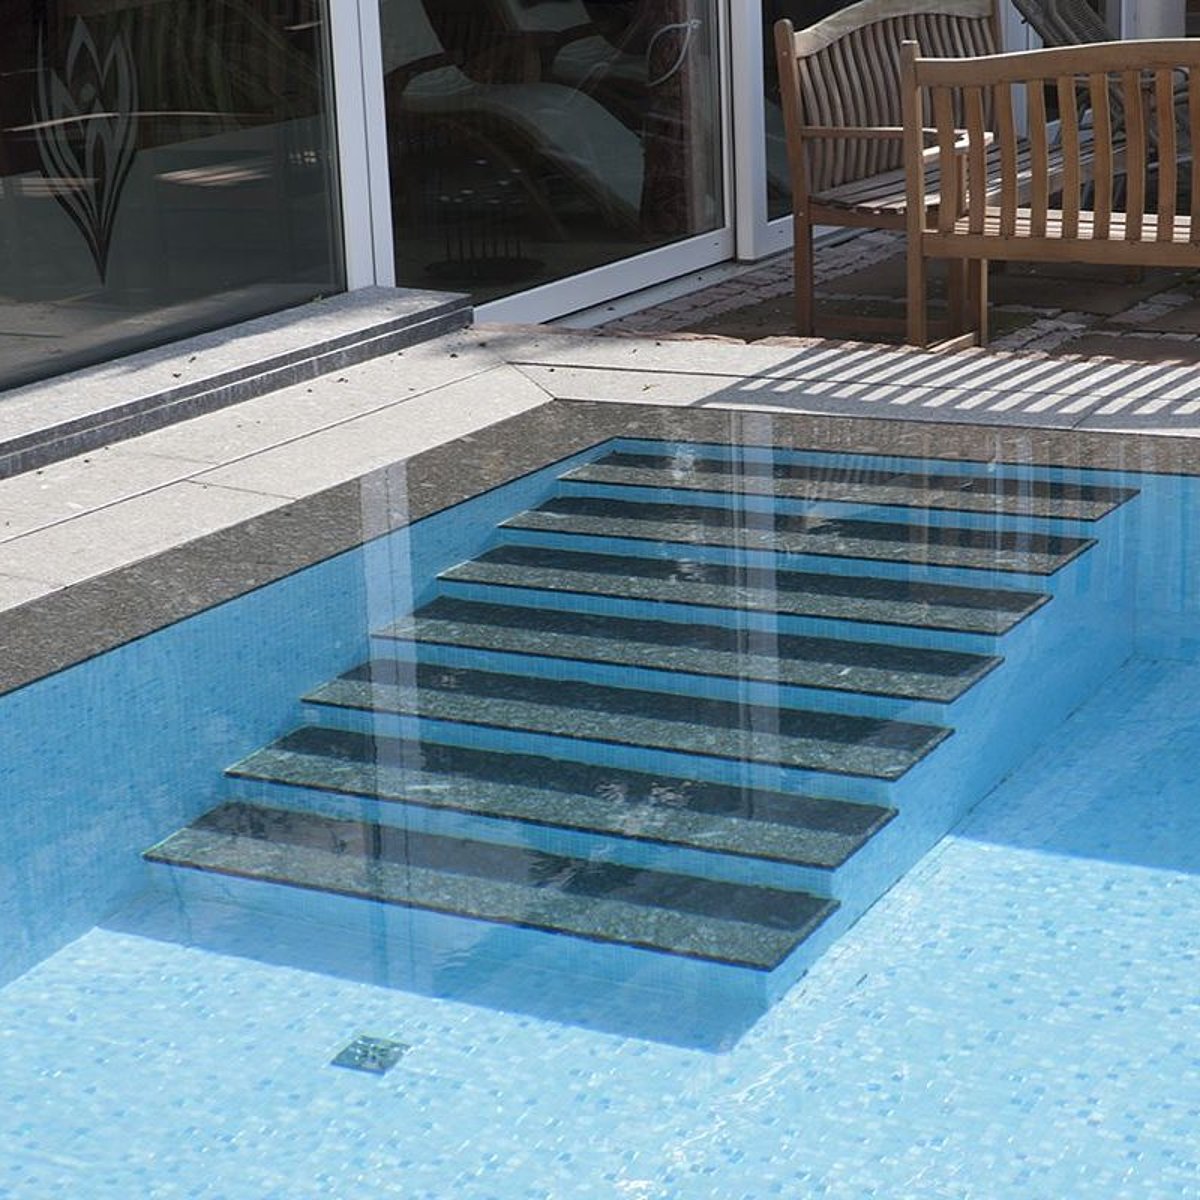 Ein Swimming Pool mit Einstiegstreppe, die mit Naturstein gestaltet wurde – passend zum Beckenumlauf.